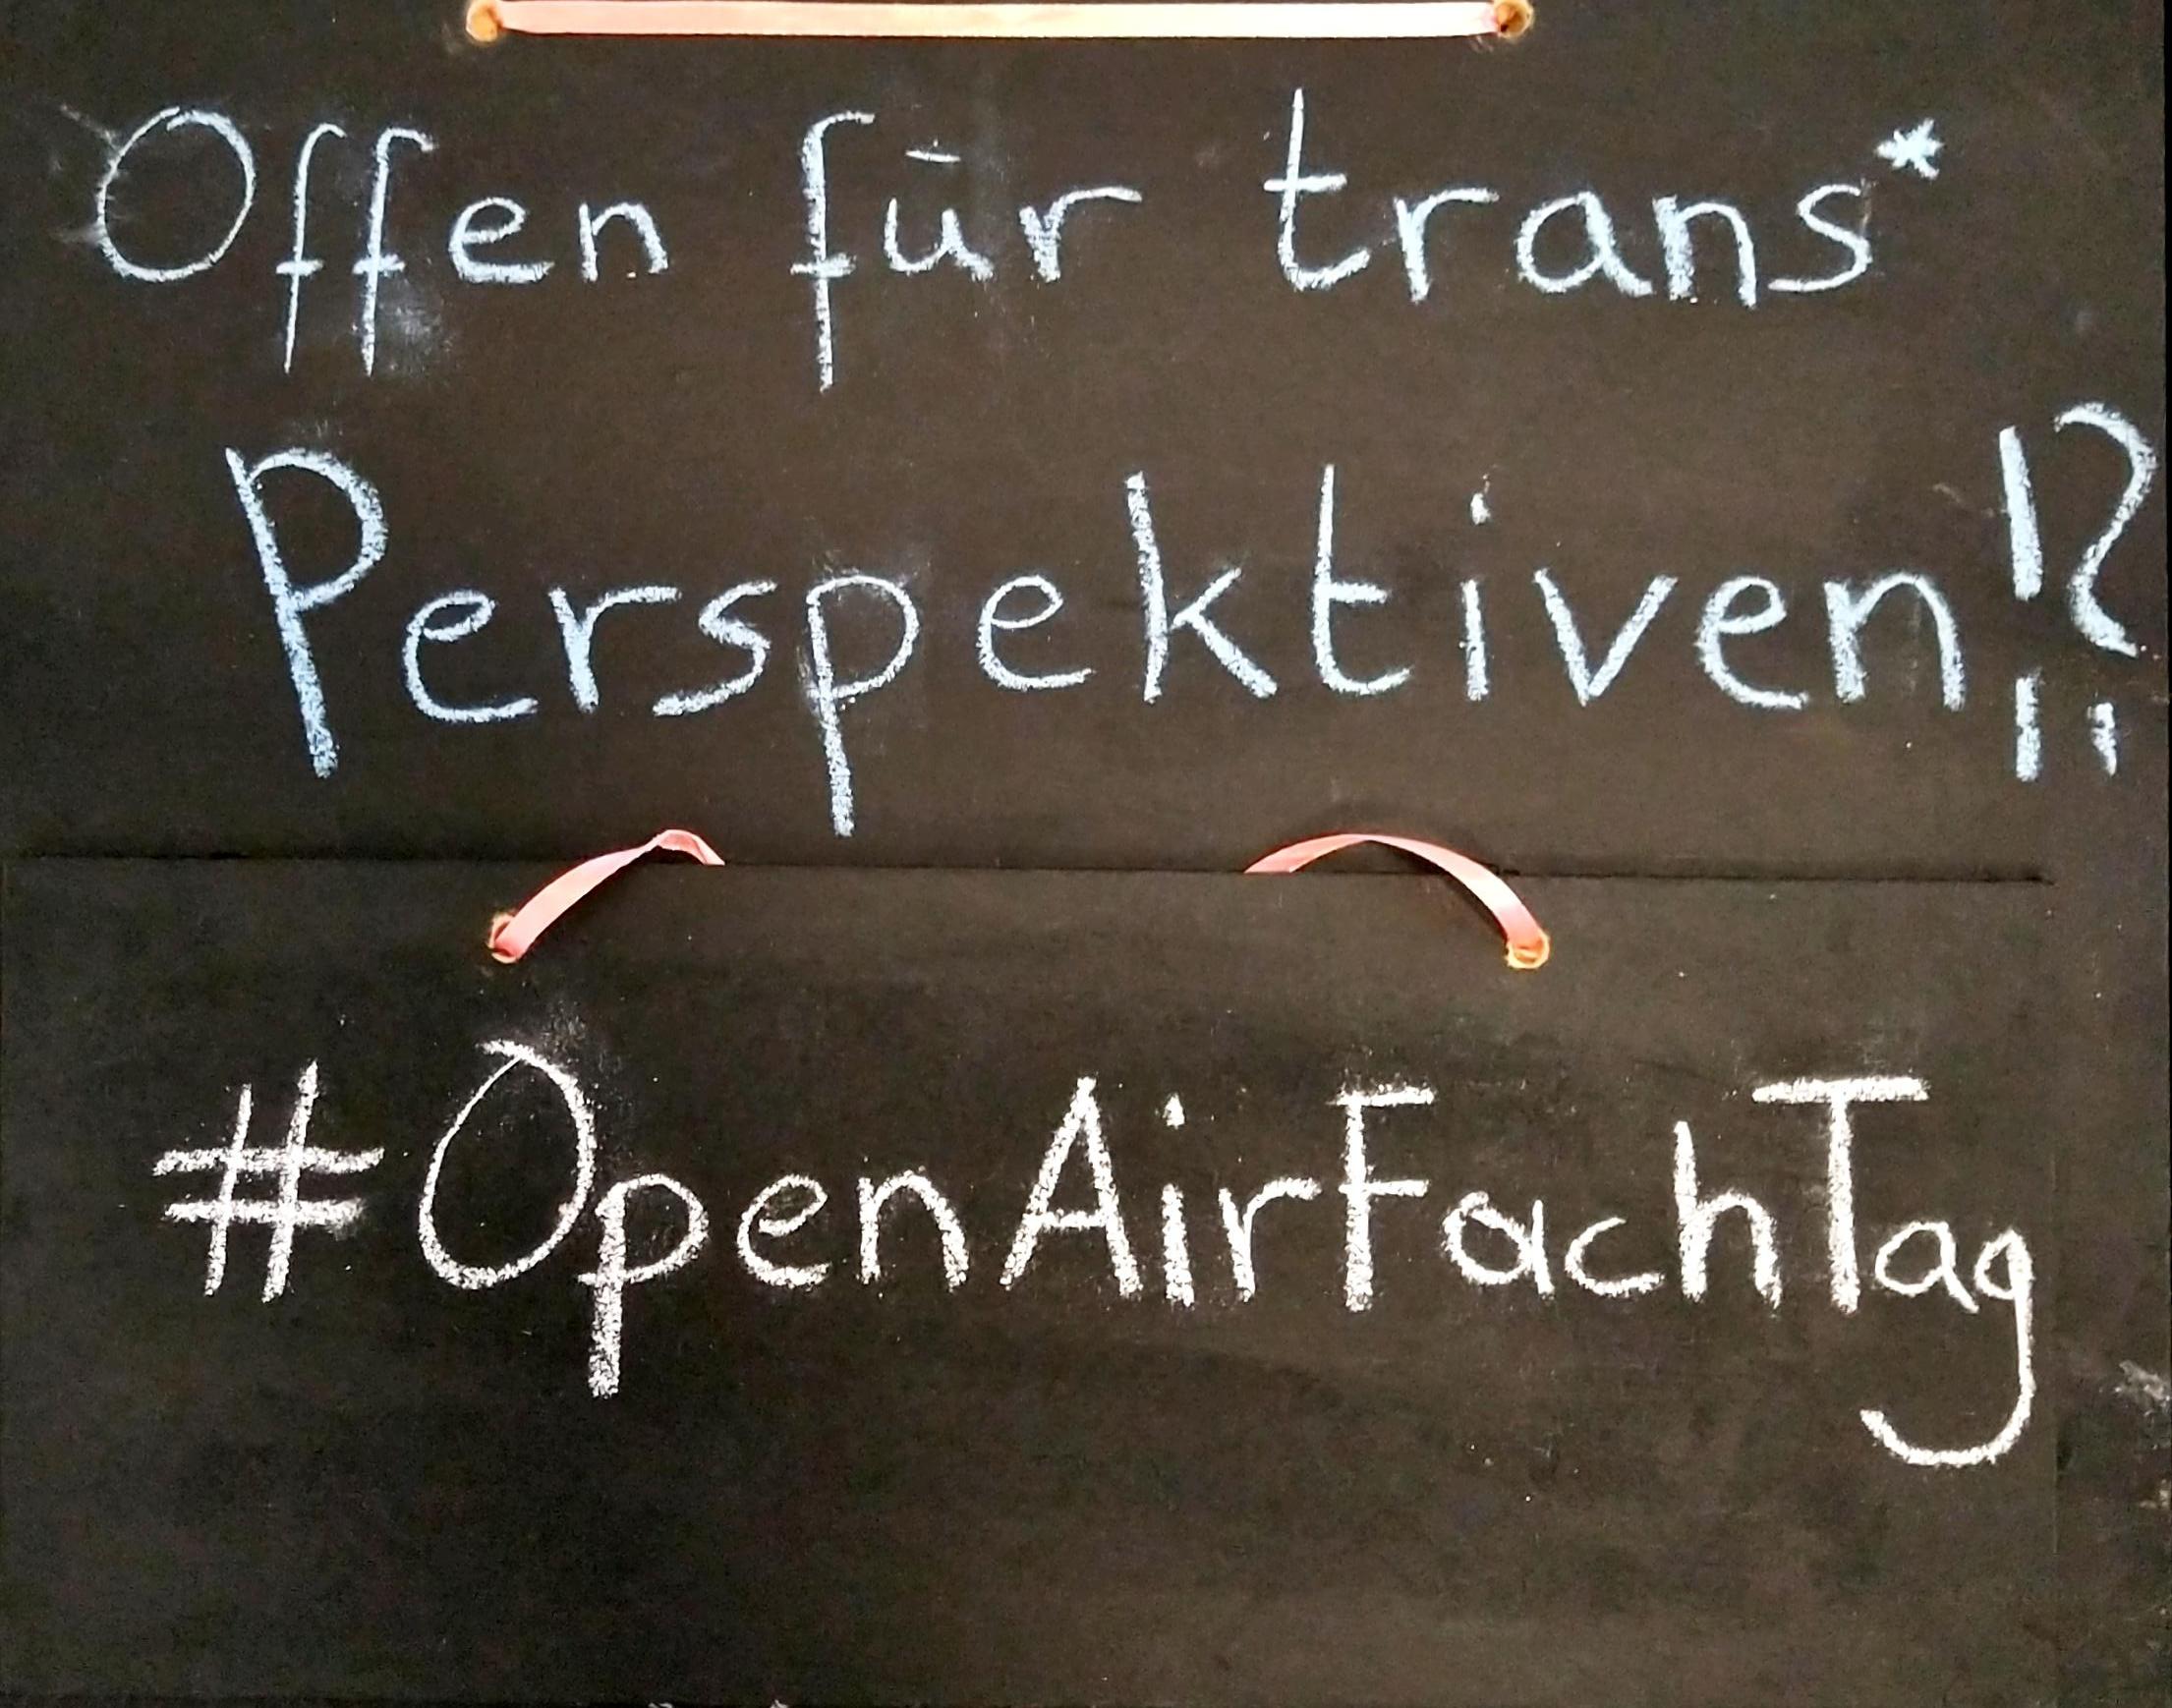 Hier siehst du den Titel des Fachtages mit Kreide auf eine Tafel gemalt: Offen für trans* Perspektiven?! #OpenAirFachTag